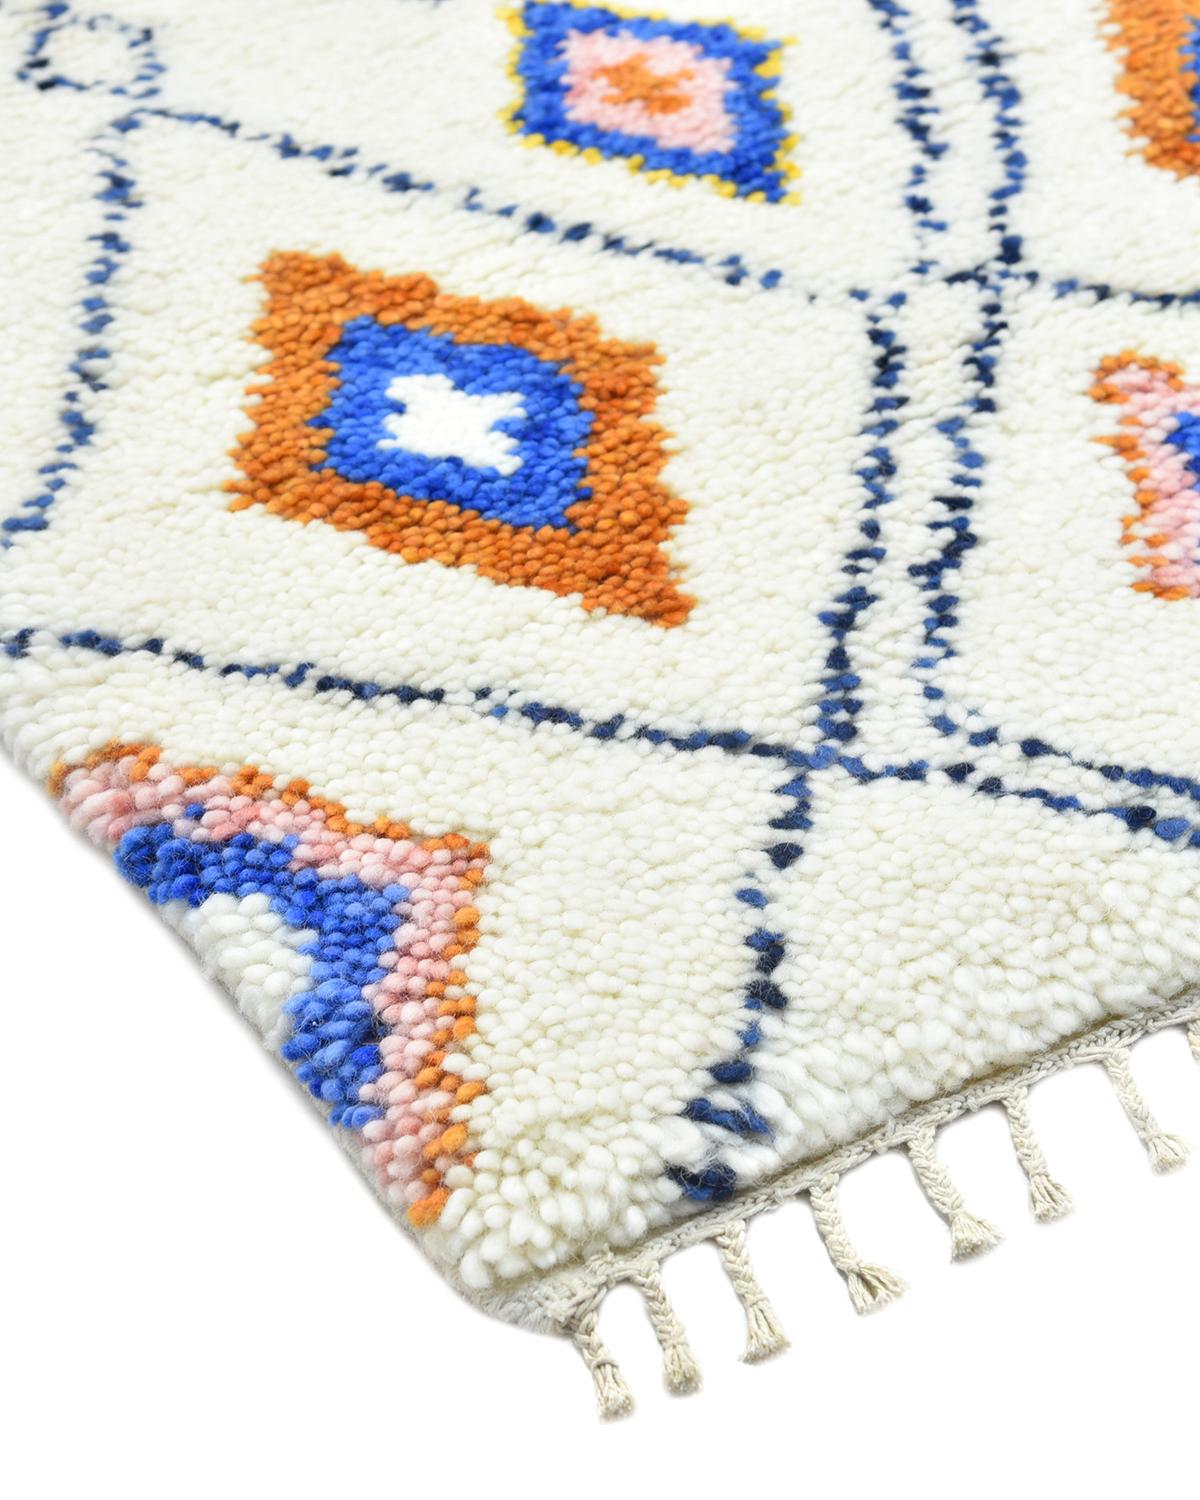 Le patrimoine marocain en matière de fabrication de tapis s'étend des Beni Ourains neutres et moelleux aux kilims légers et colorés. Rendant hommage au savoir-faire traditionnel et aux motifs séculaires, ces tapis fabriqués à la main confèrent un